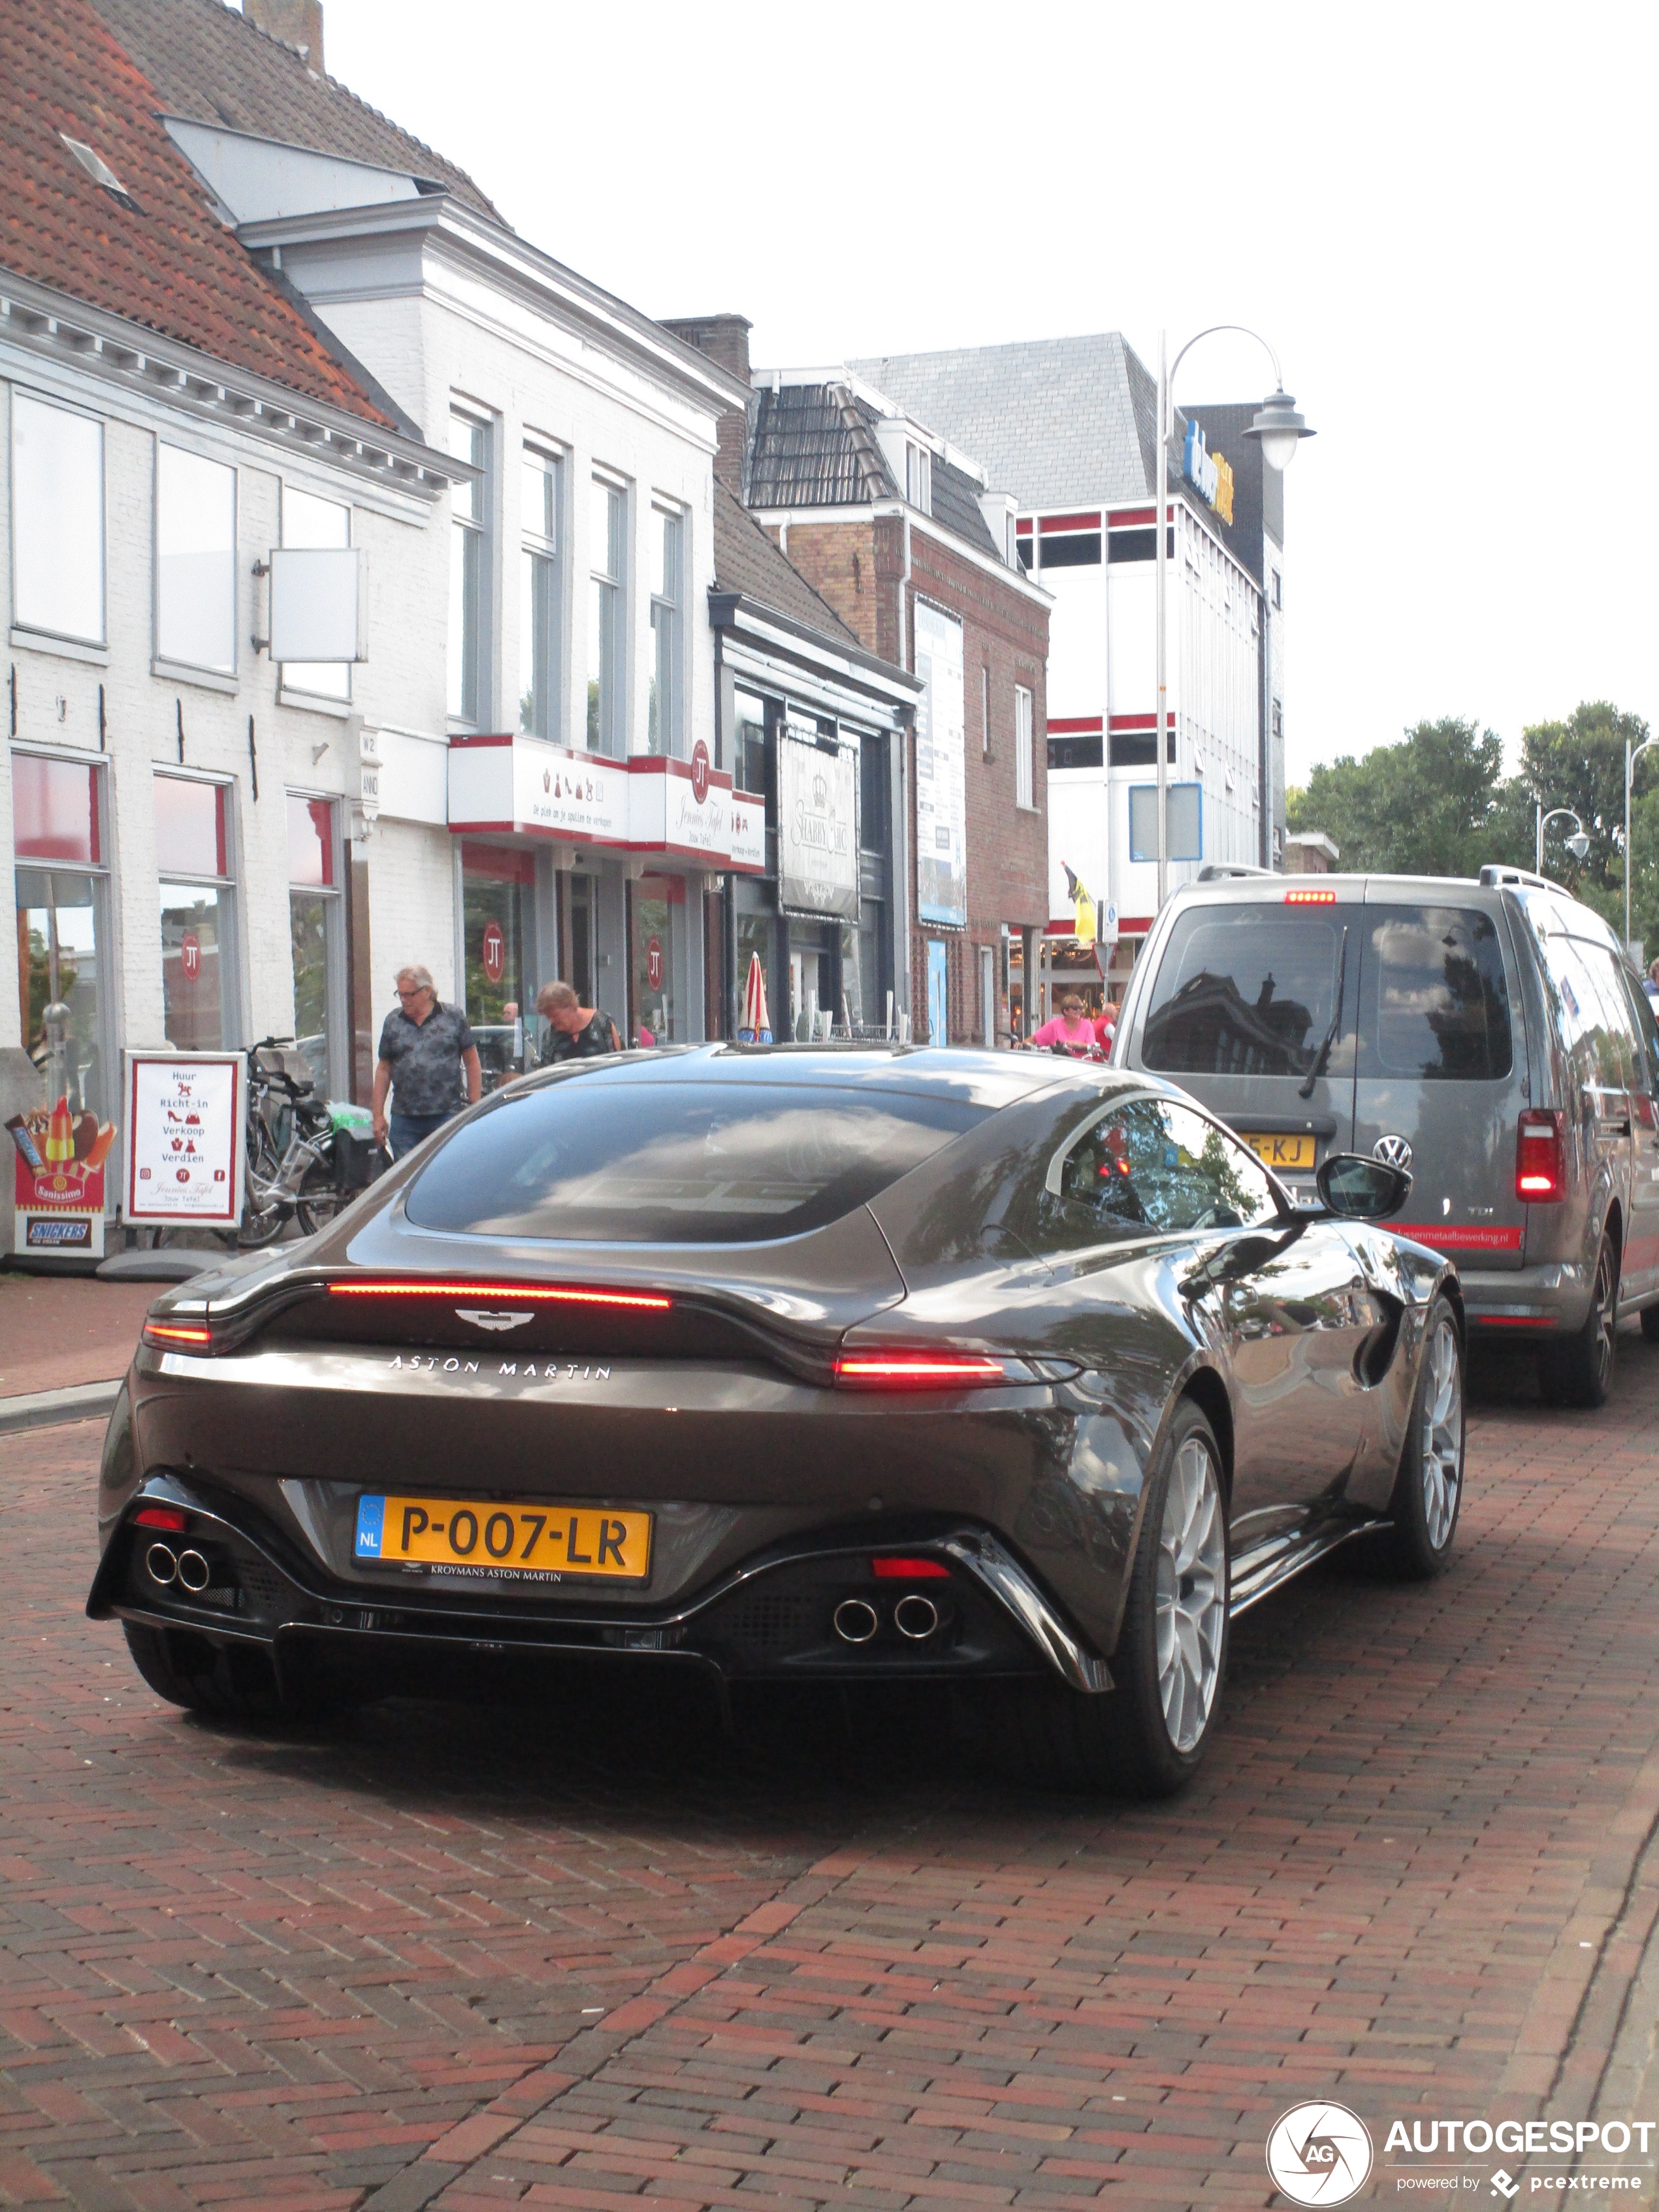 Nederlandse Aston Martin V8 Vantage 007 edition heeft toch een persoonlijk kenteken